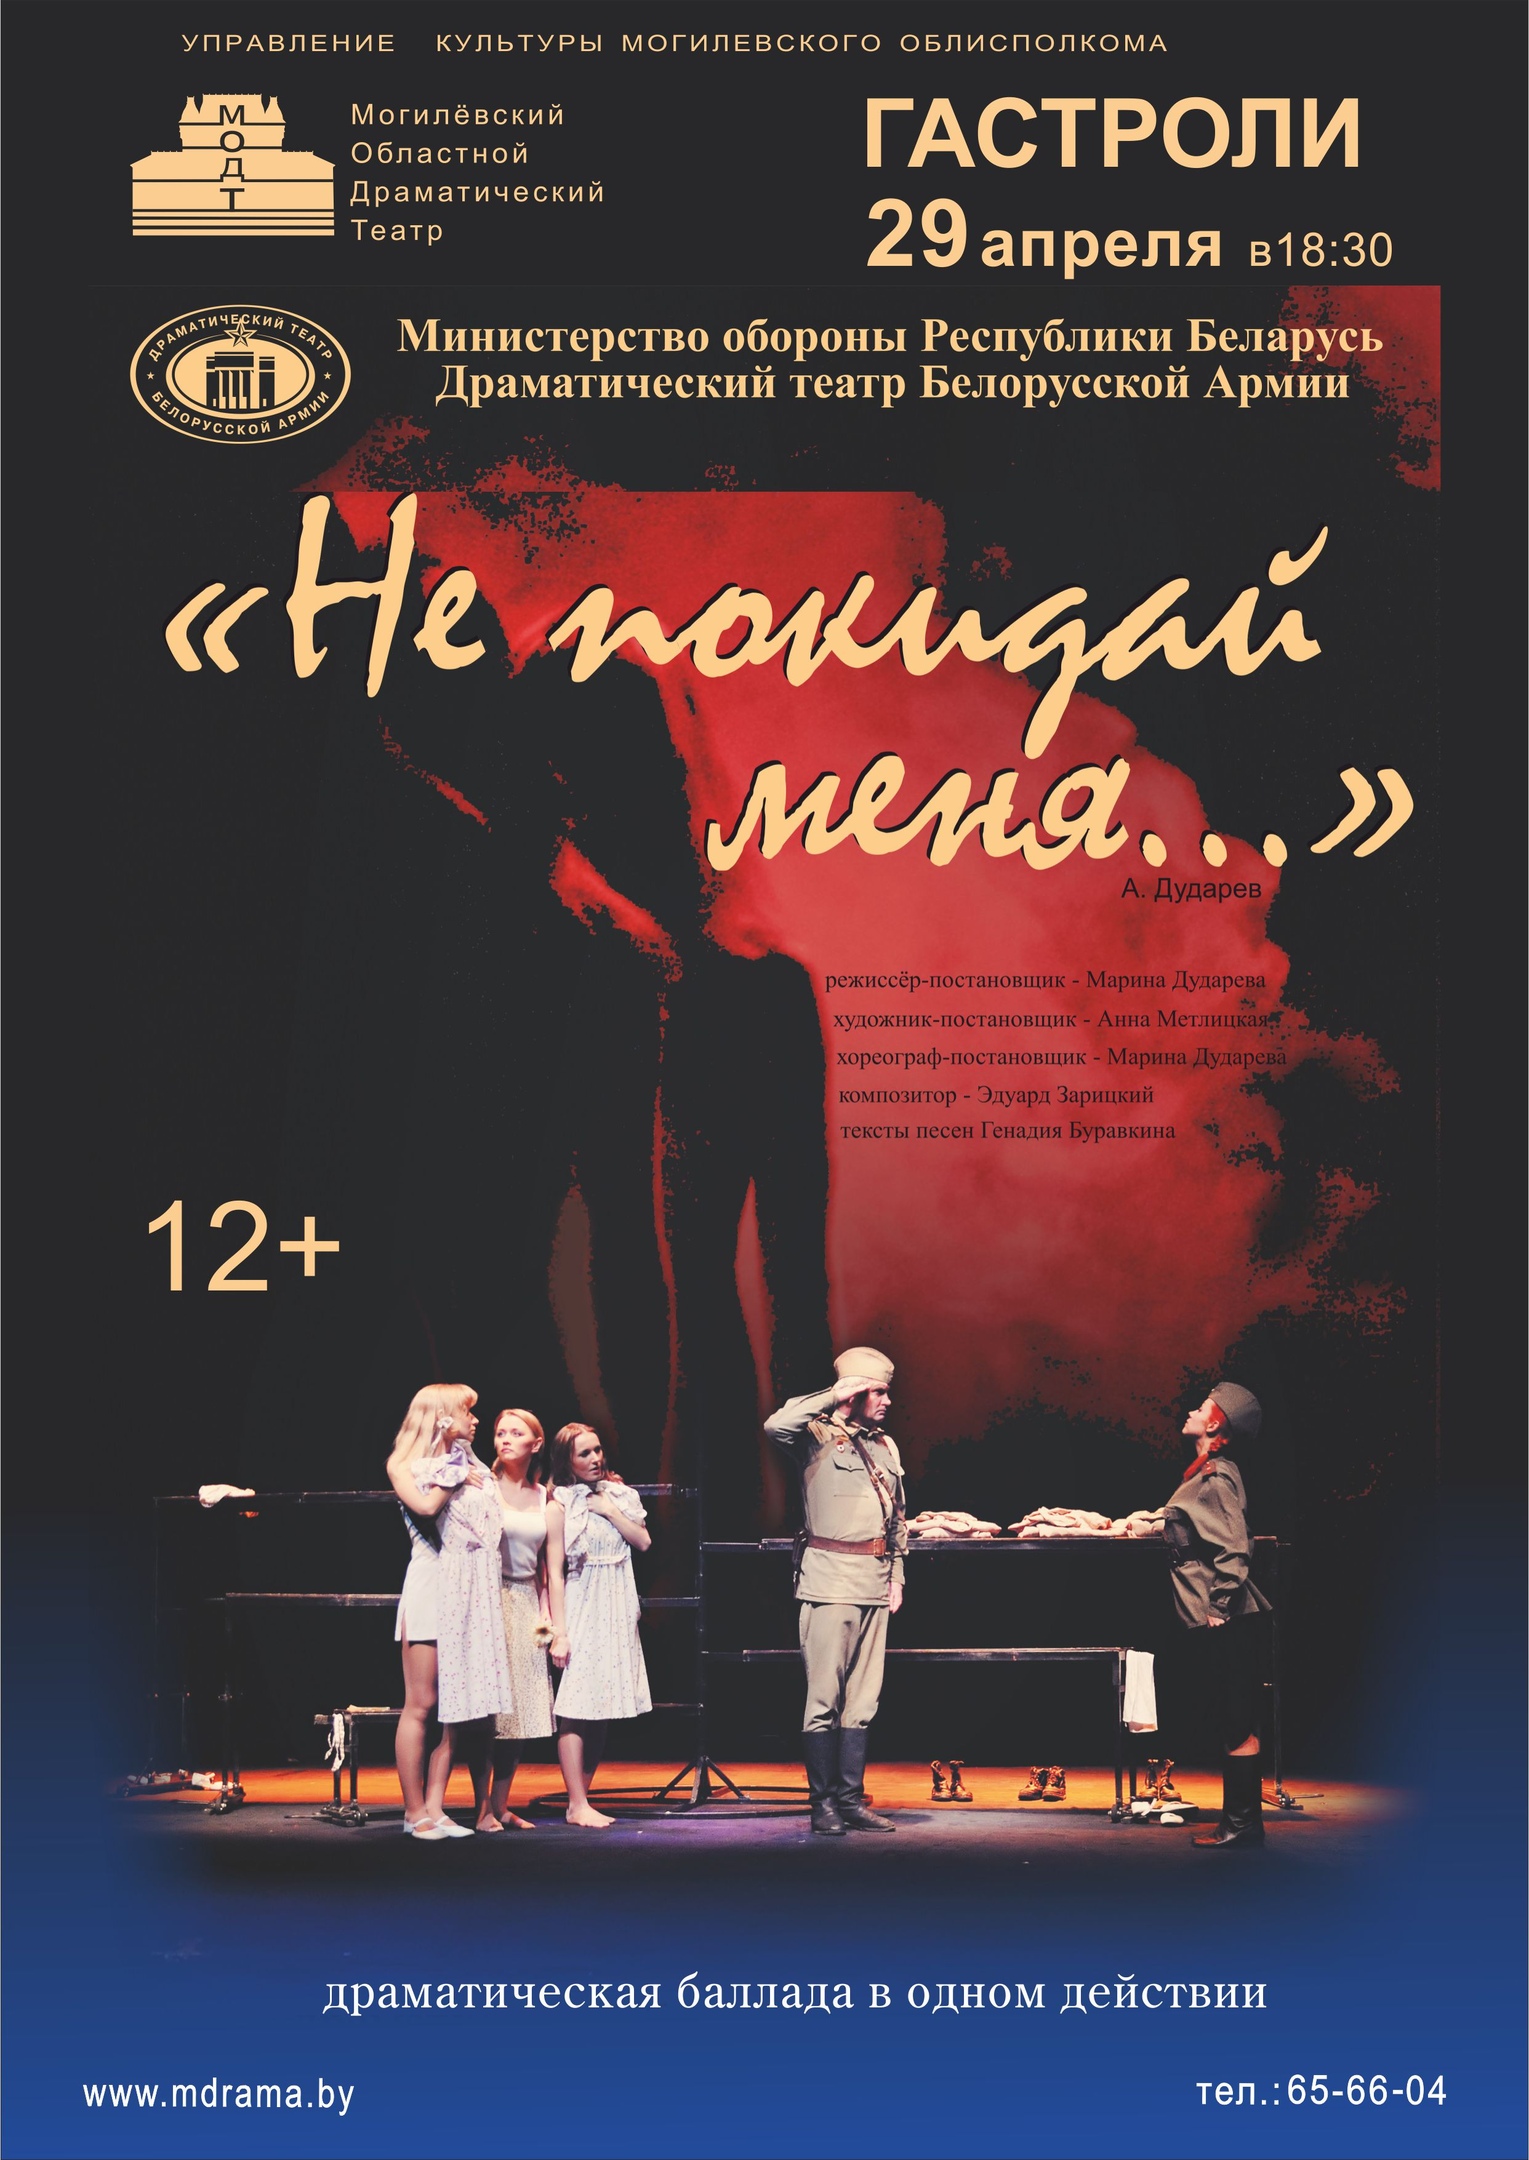 Драматическая баллада в одном действии: спектакль «Не покидай меня» представят в Могилеве 29 апреля